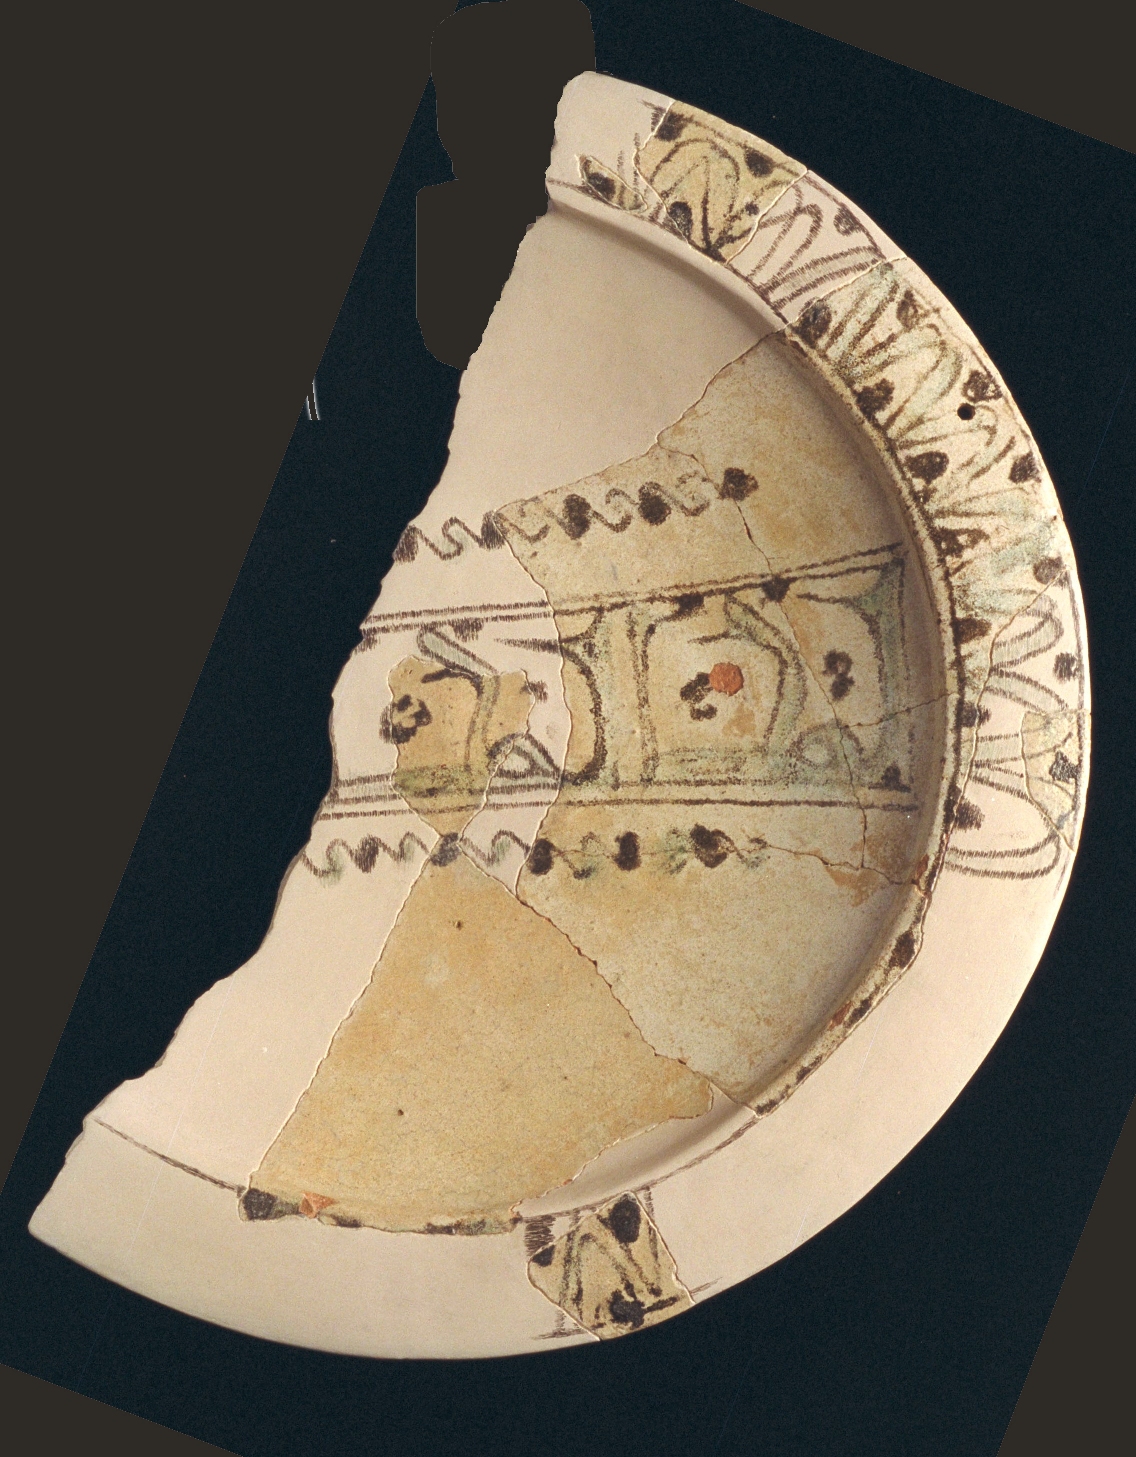 Ataifor (fuente) con la inscripción en árabe: “El poder”. Cuesta de la Vega. Época islámica. Siglos X-XI.